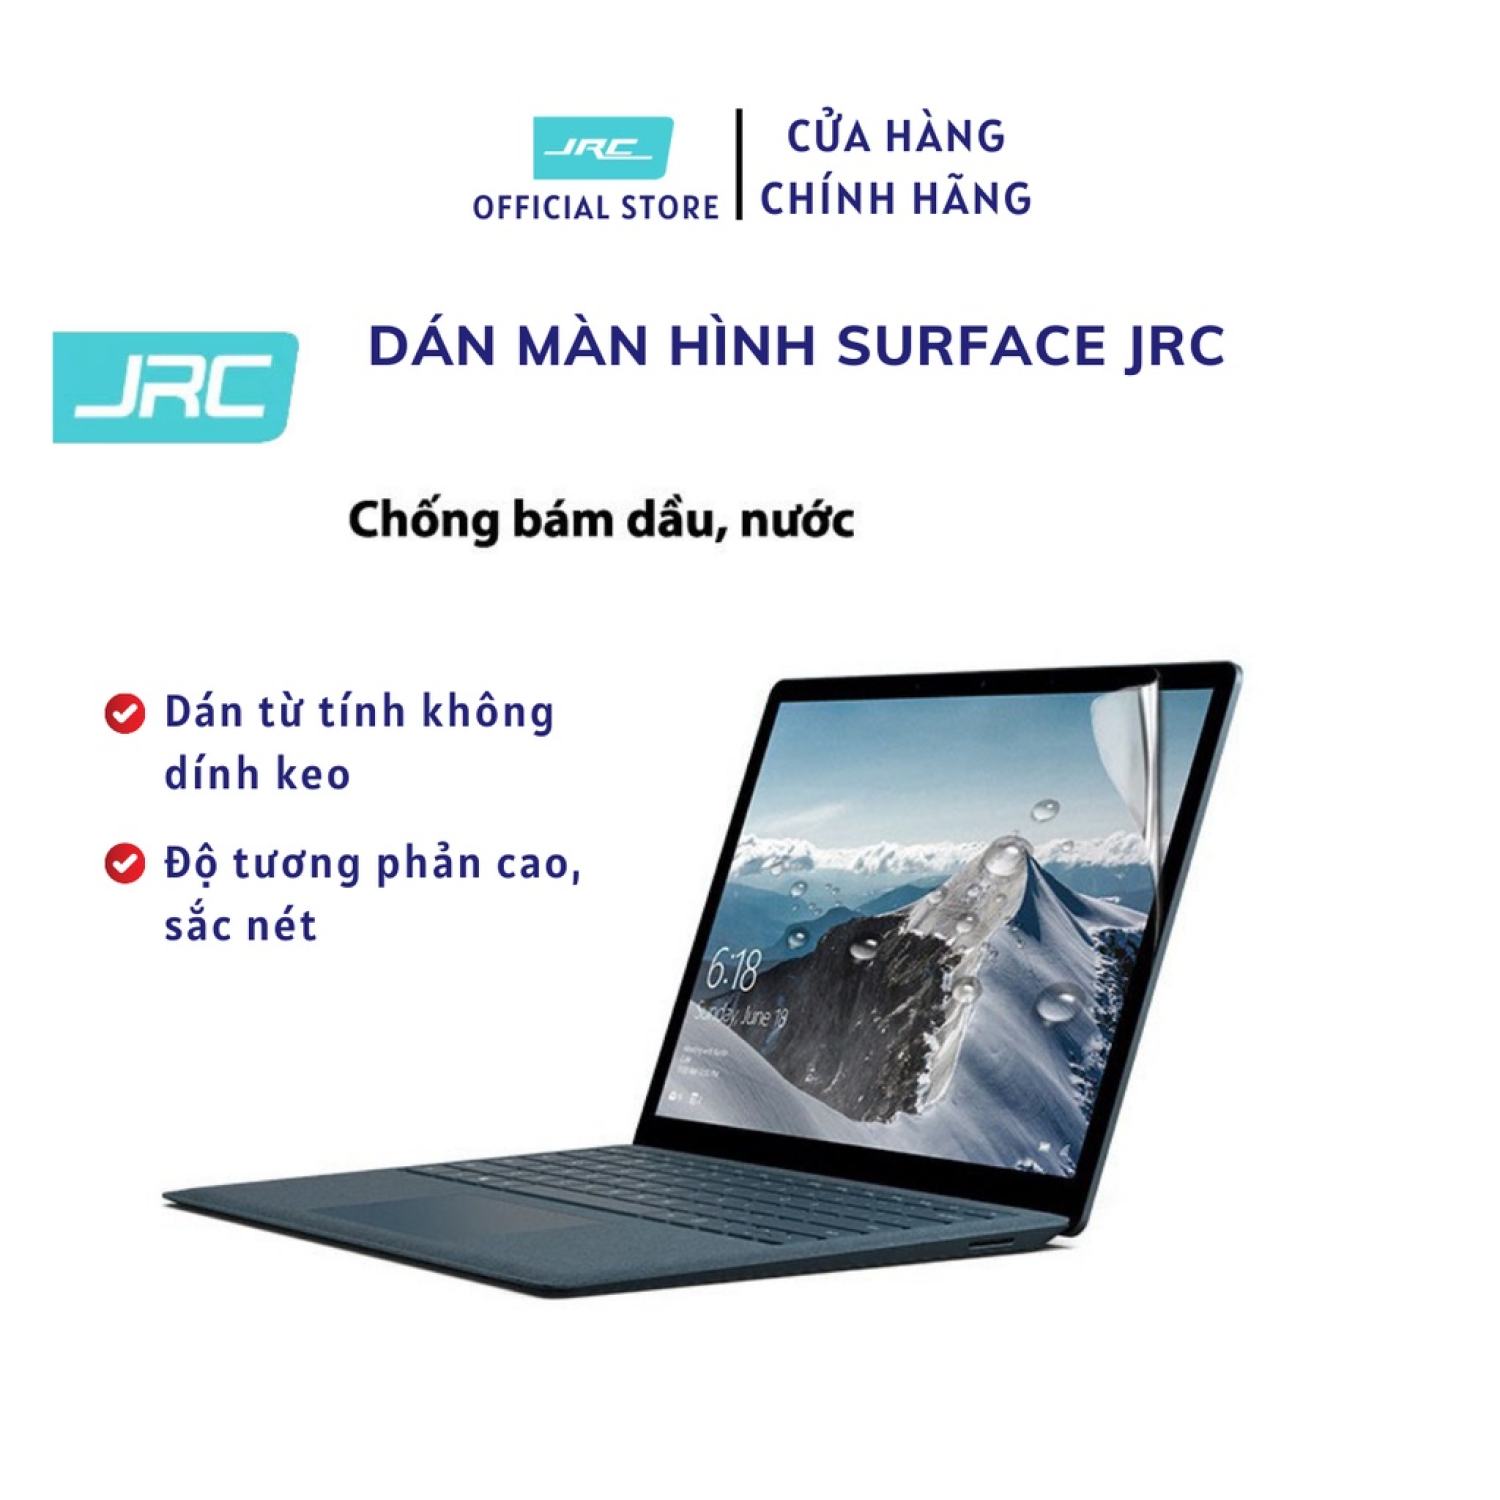 Dán Màn Hình Surface Laptop 1 2 3 4 JRC từ tính không dính keo thumbnail